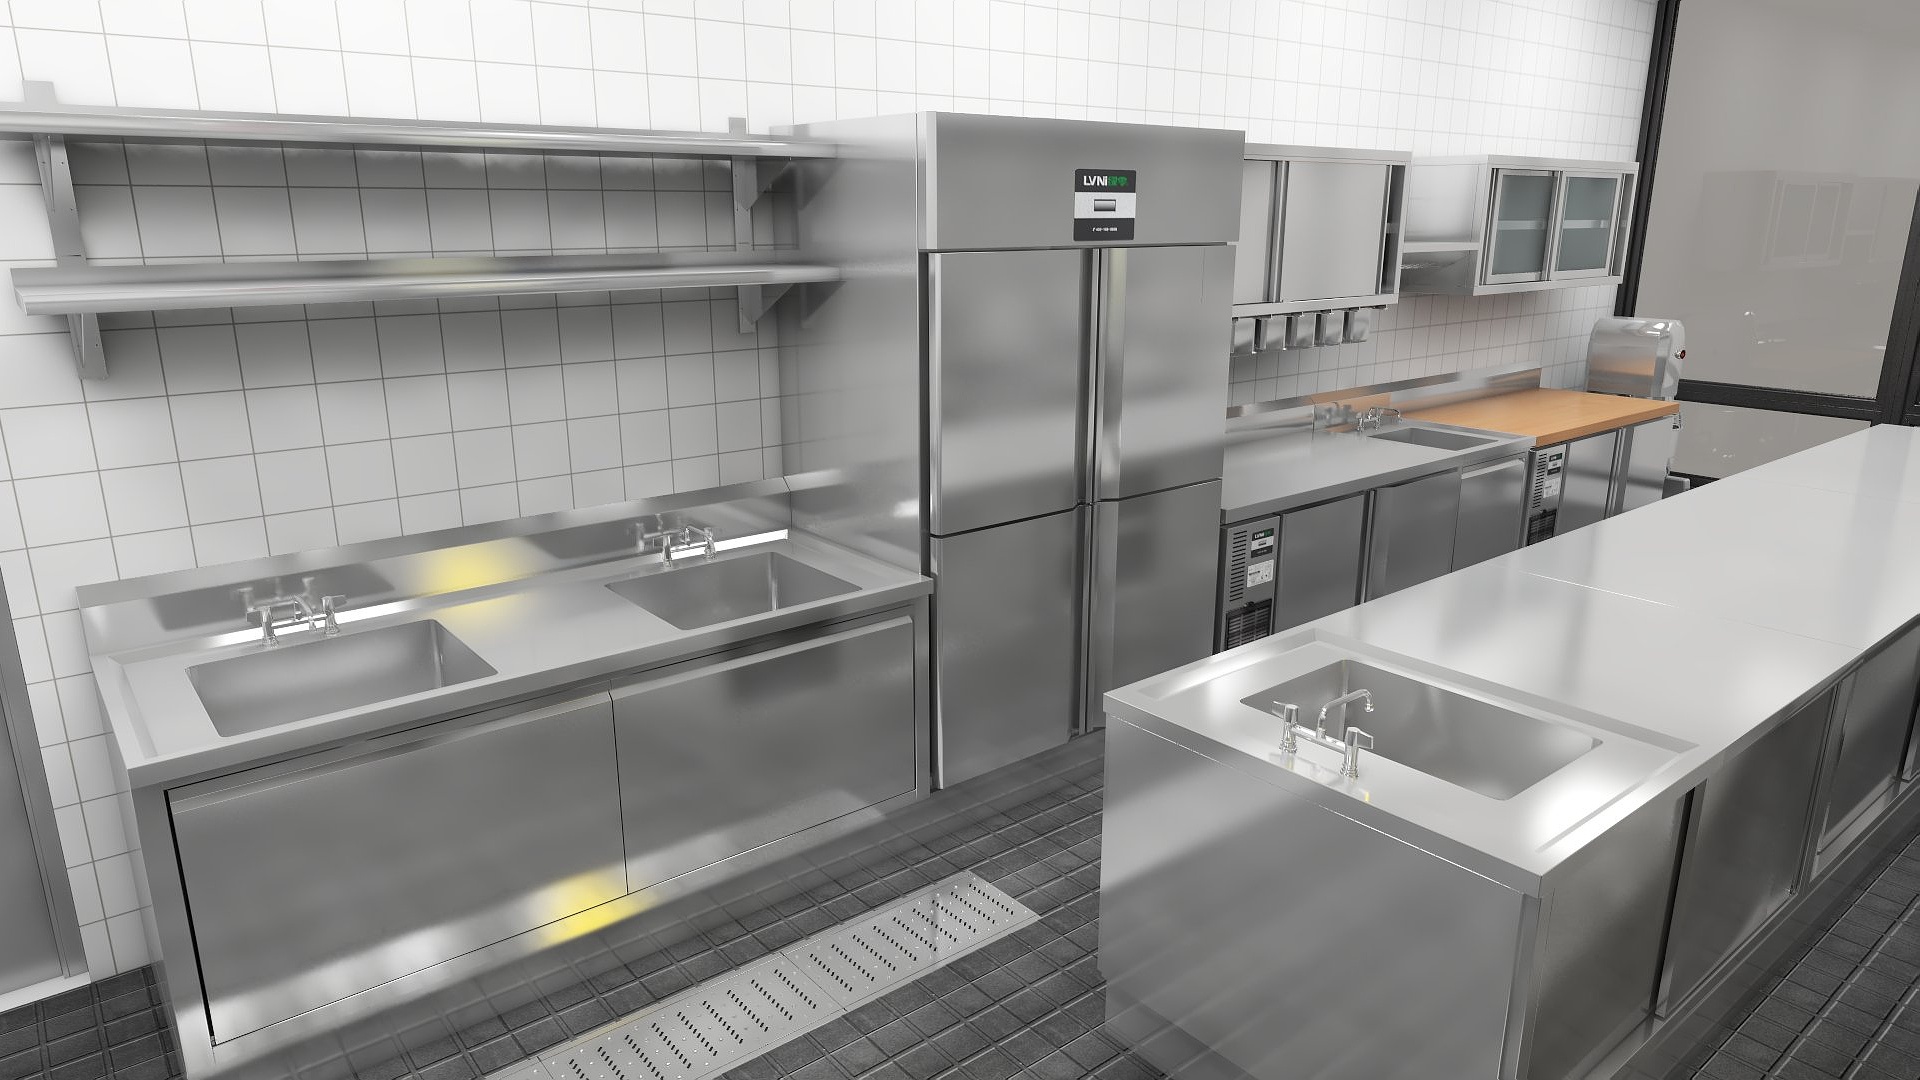 克什克腾旗计量称重智能厨房厨房生产厂家厨房智慧系统茂发厨具